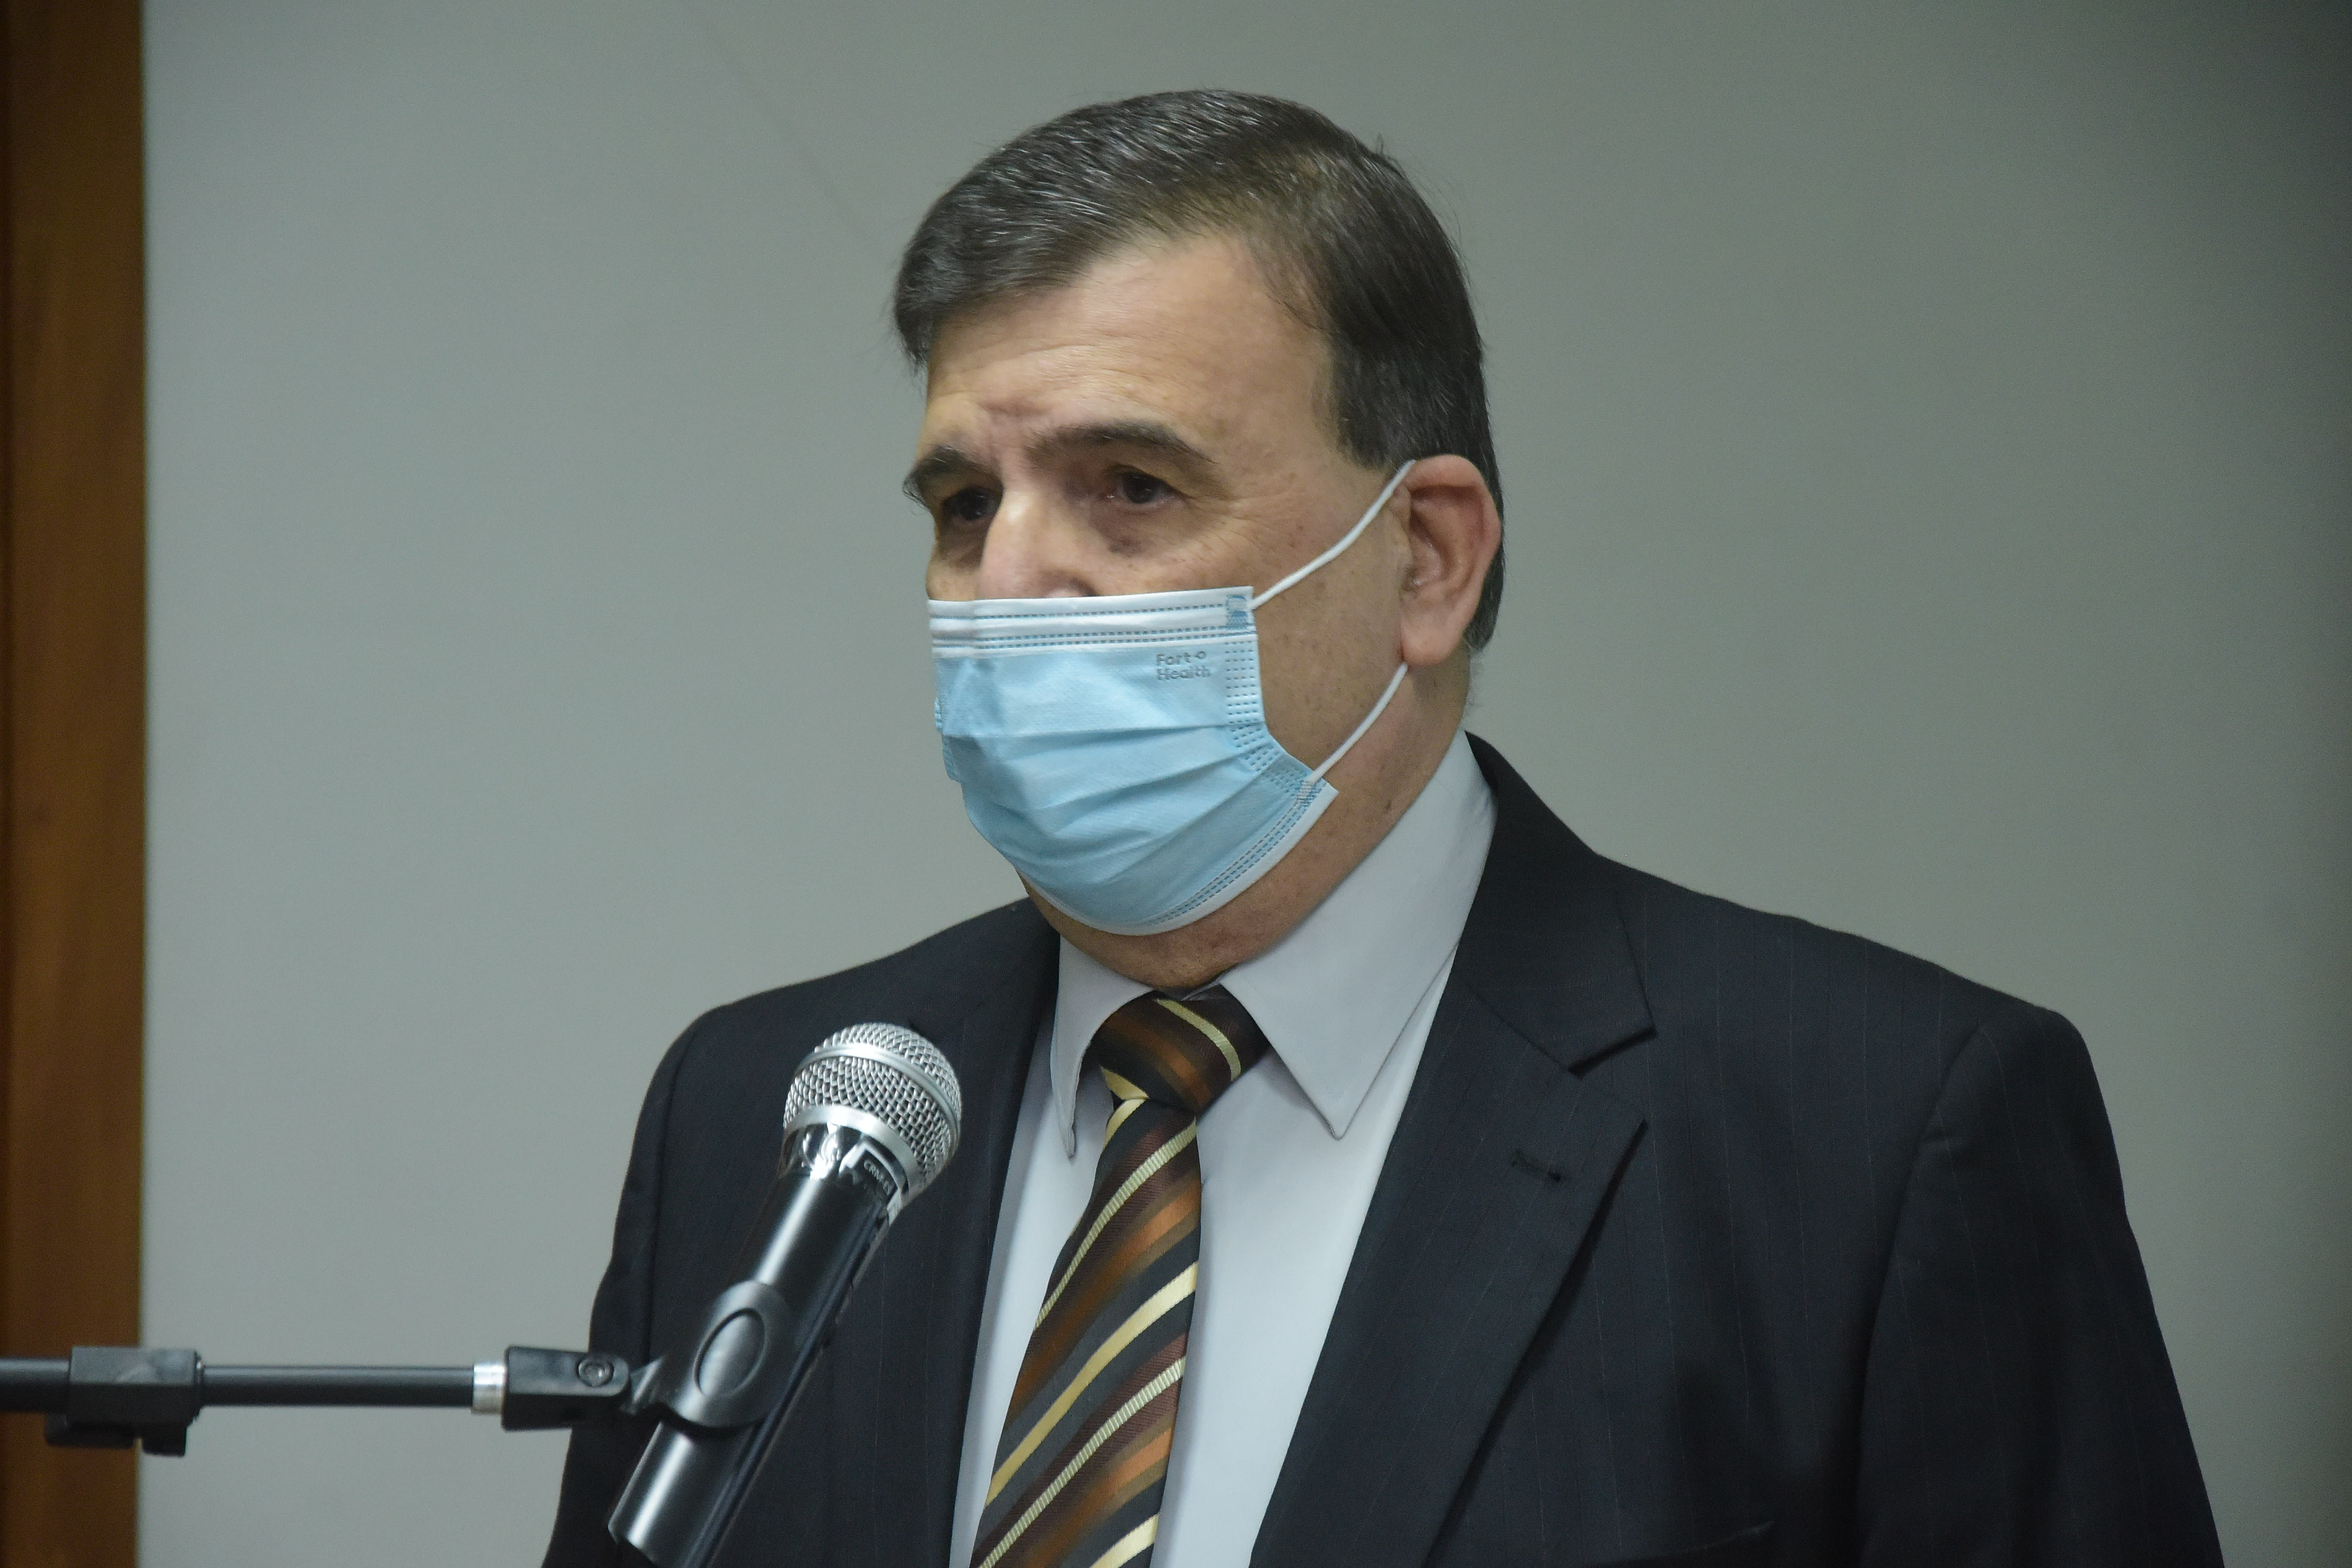 Dr. Joubert de Almeida Esteves